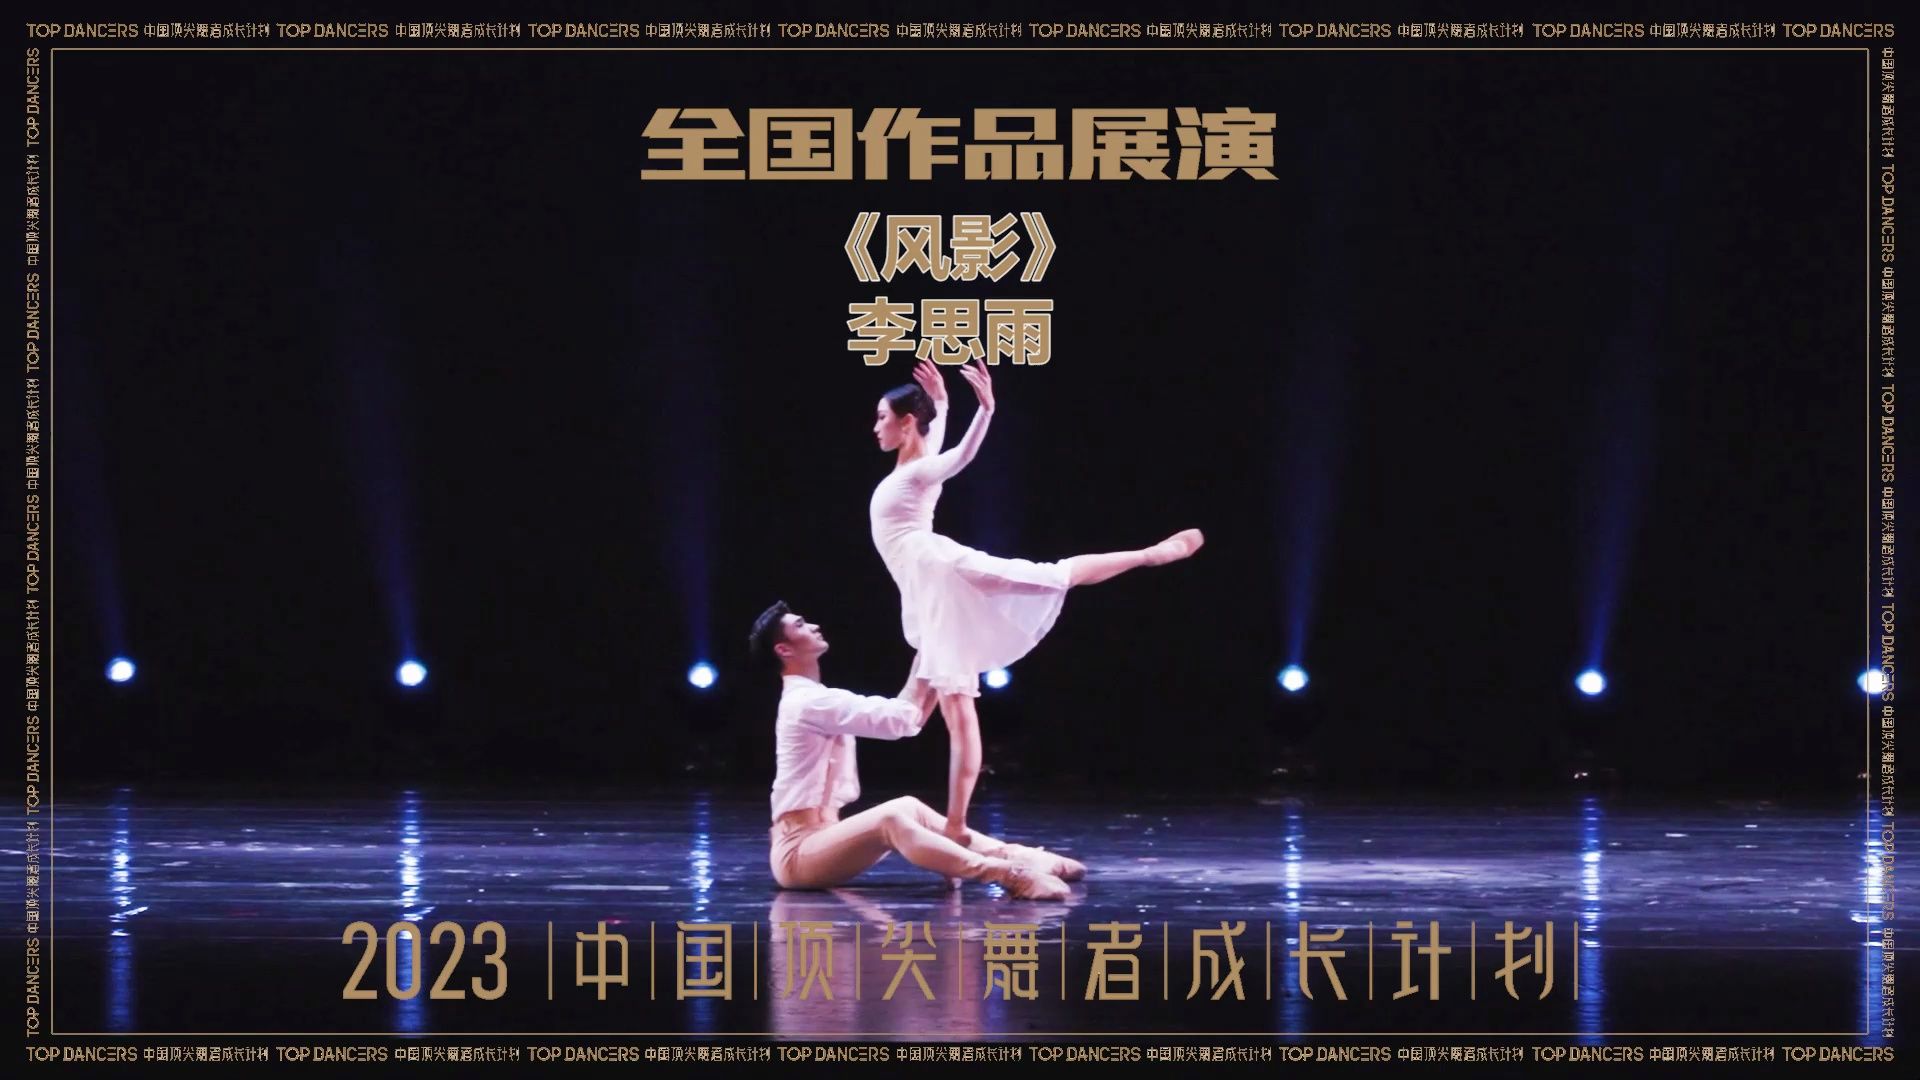 【2023中国顶尖舞者全国作品展演】 李思雨 芭蕾舞 《风影》